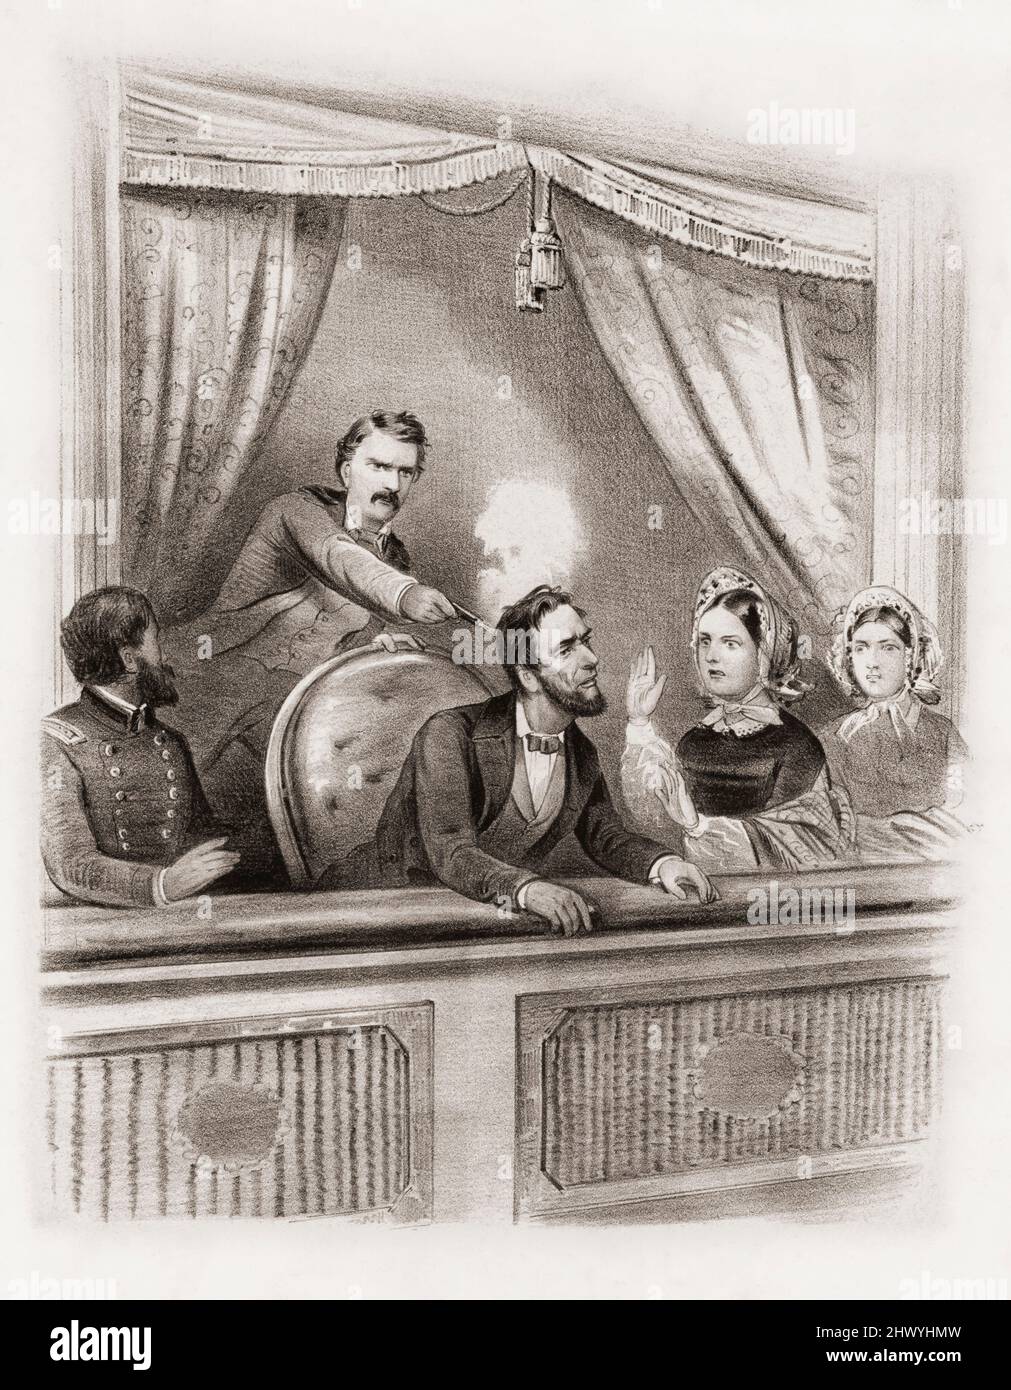 L'assassinat le 14 avril 1865 du président Abraham Lincoln par John Wilkes Booth au théâtre Ford, Washington, pendant la pièce notre cousin américain. Après une illustration contemporaine. Banque D'Images